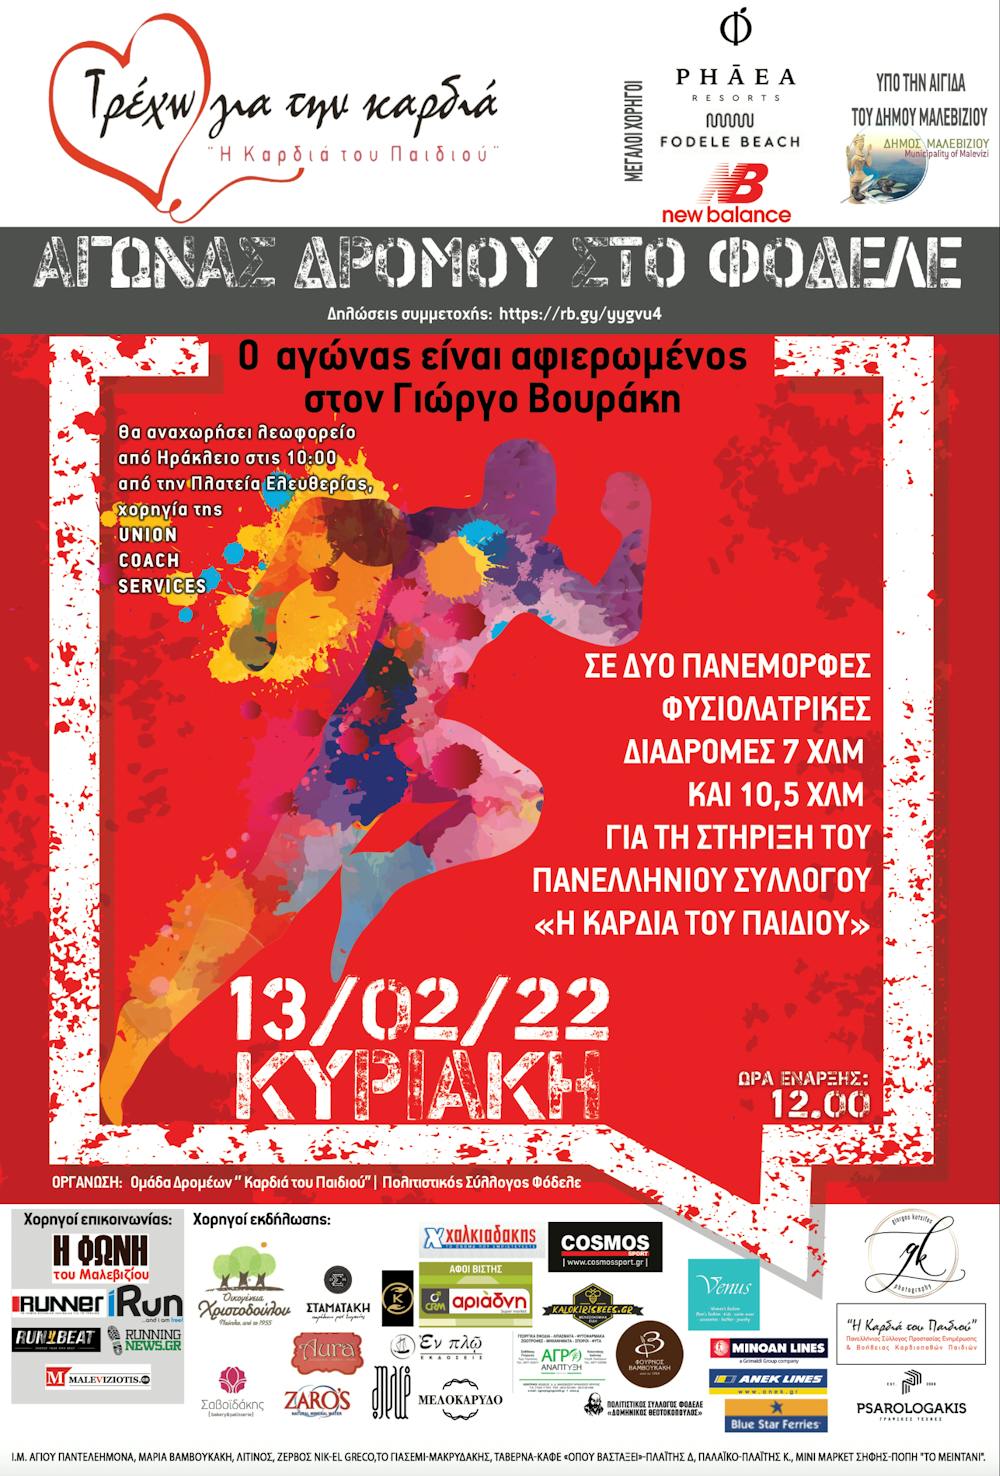 Όλα έτοιμα για τον 7ο αγώνα για την «Καρδιά του Παιδιού» - Η αφίσα της διοργάνωσης (Pic) runbeat.gr 